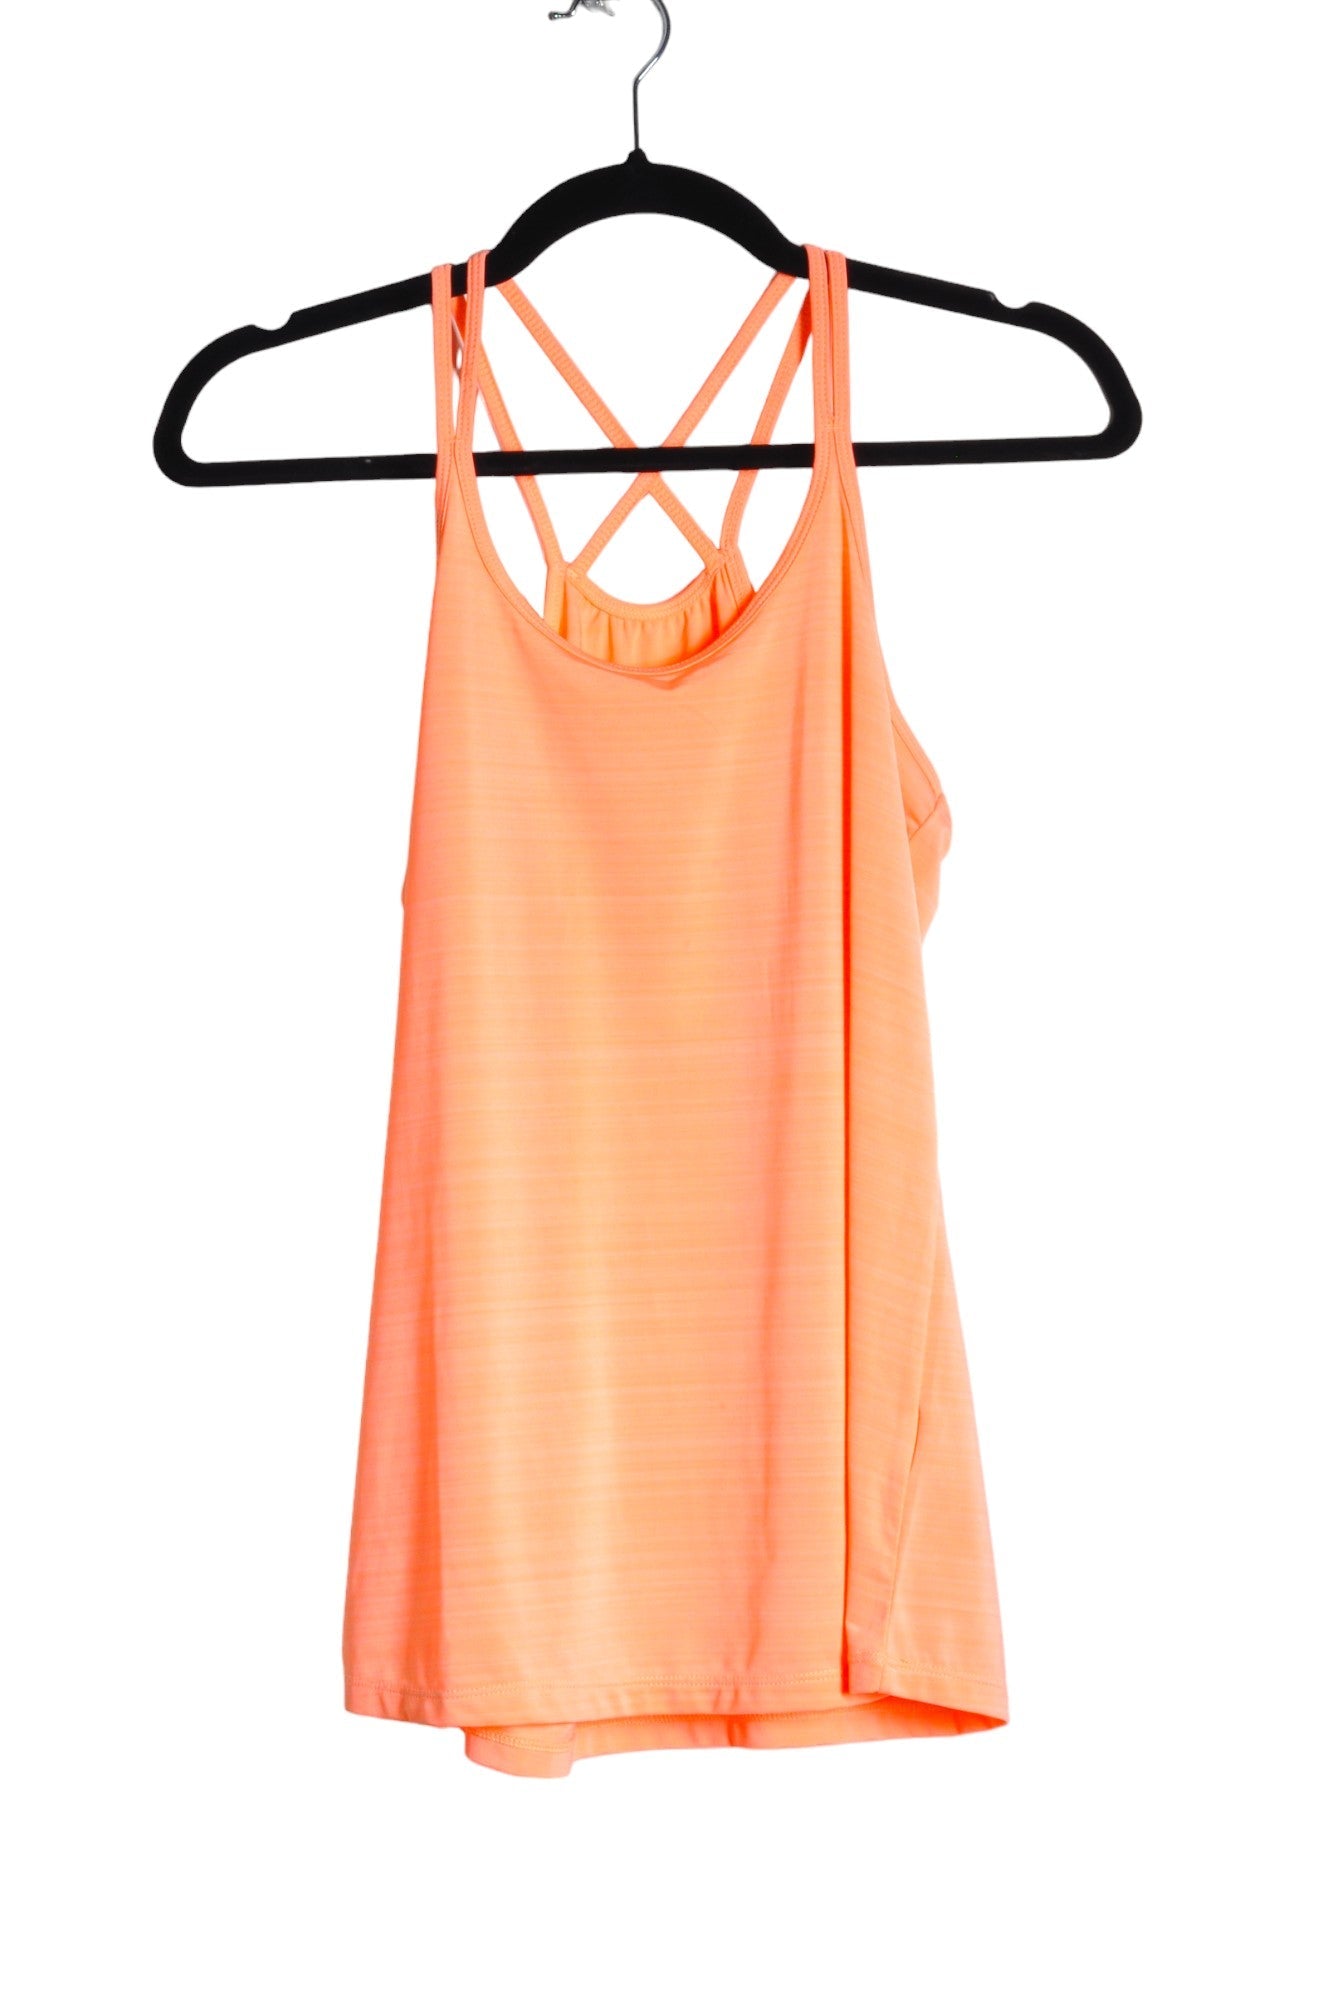 HYBA Women Activewear Tops Regular fit in Orange - Size XS | 18.76 $ KOOP